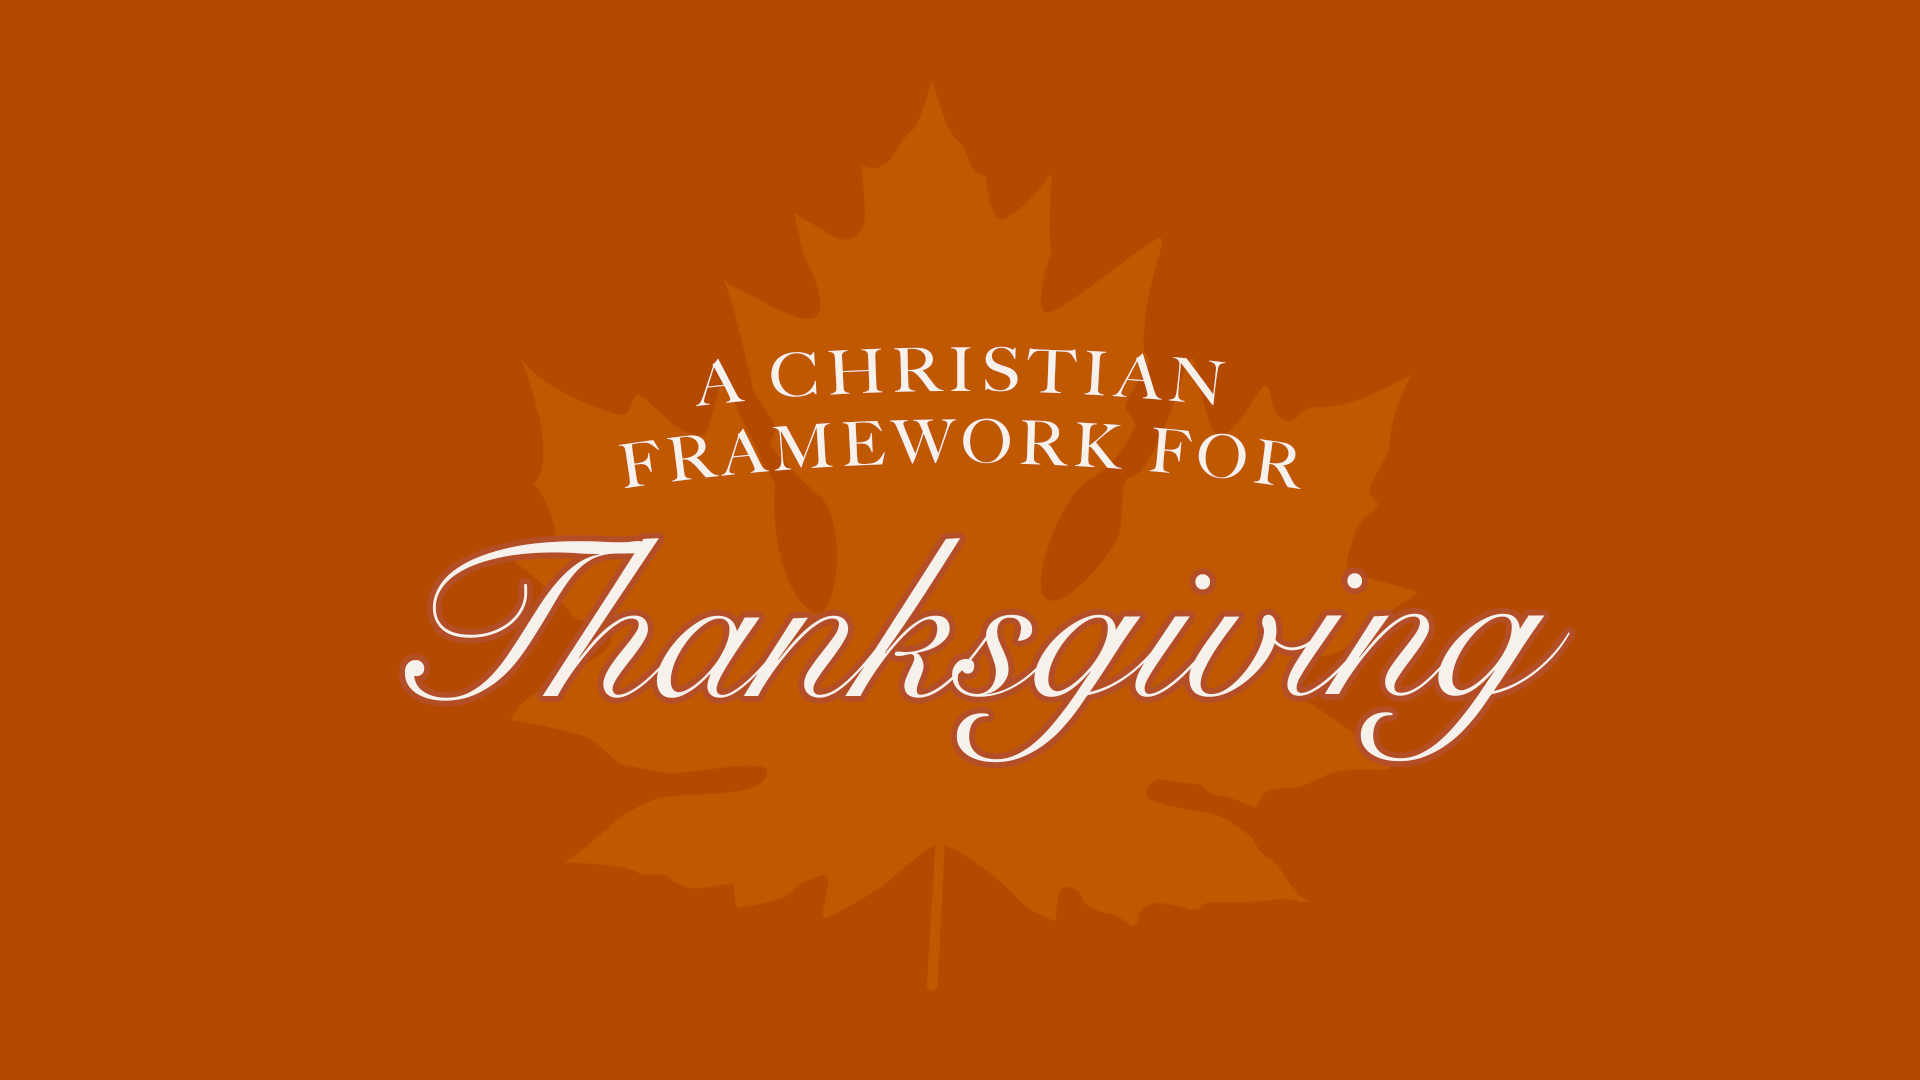 A Christian Framework for Thanksgiving